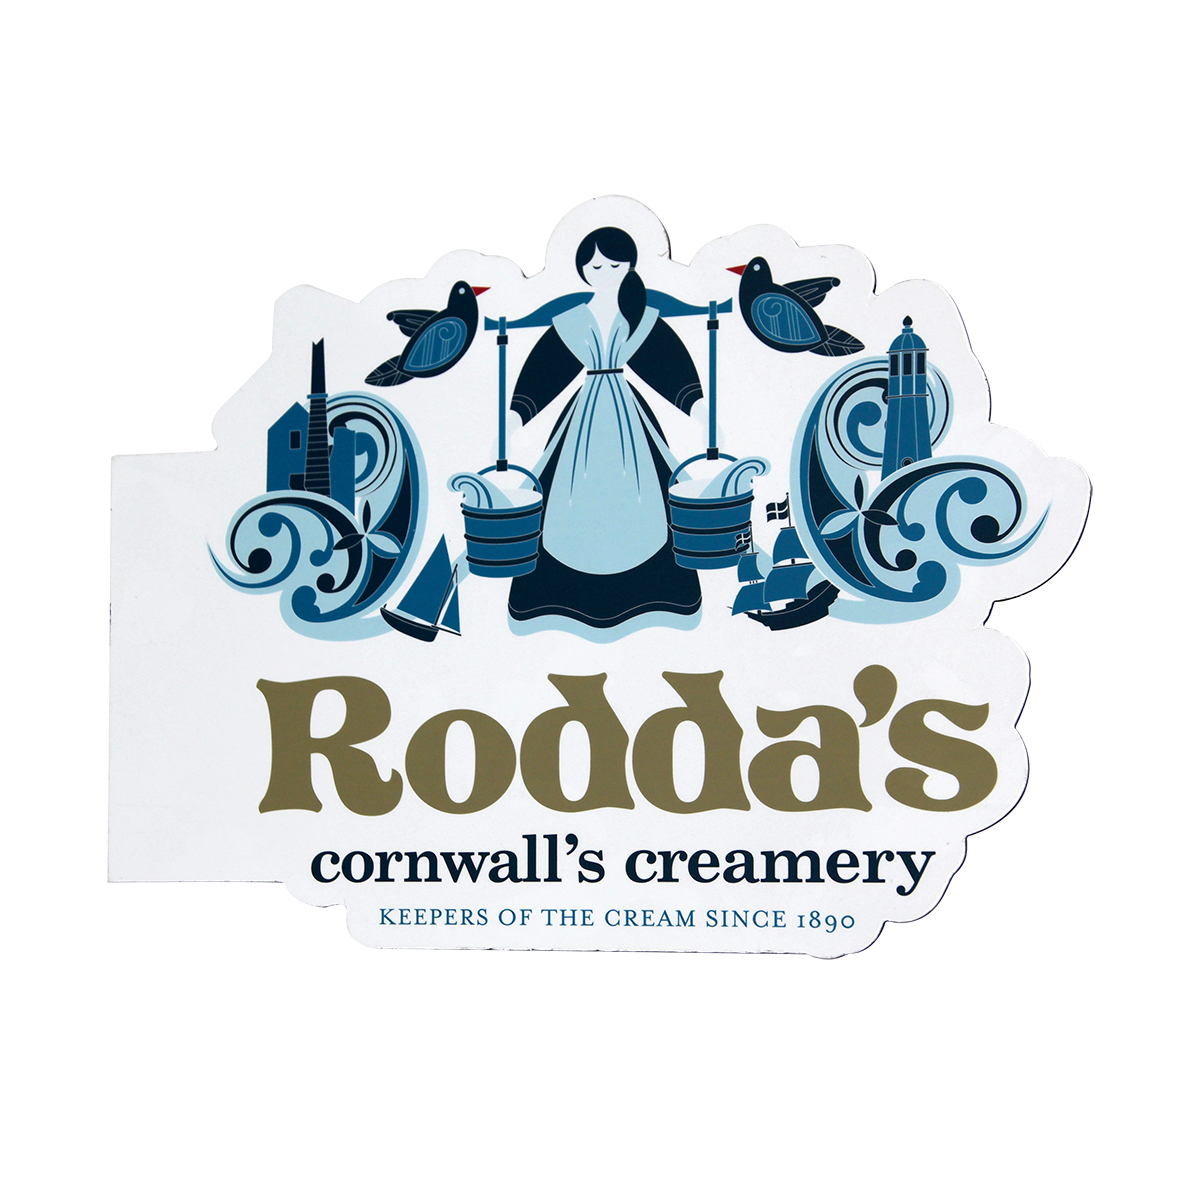 Rodda's branding